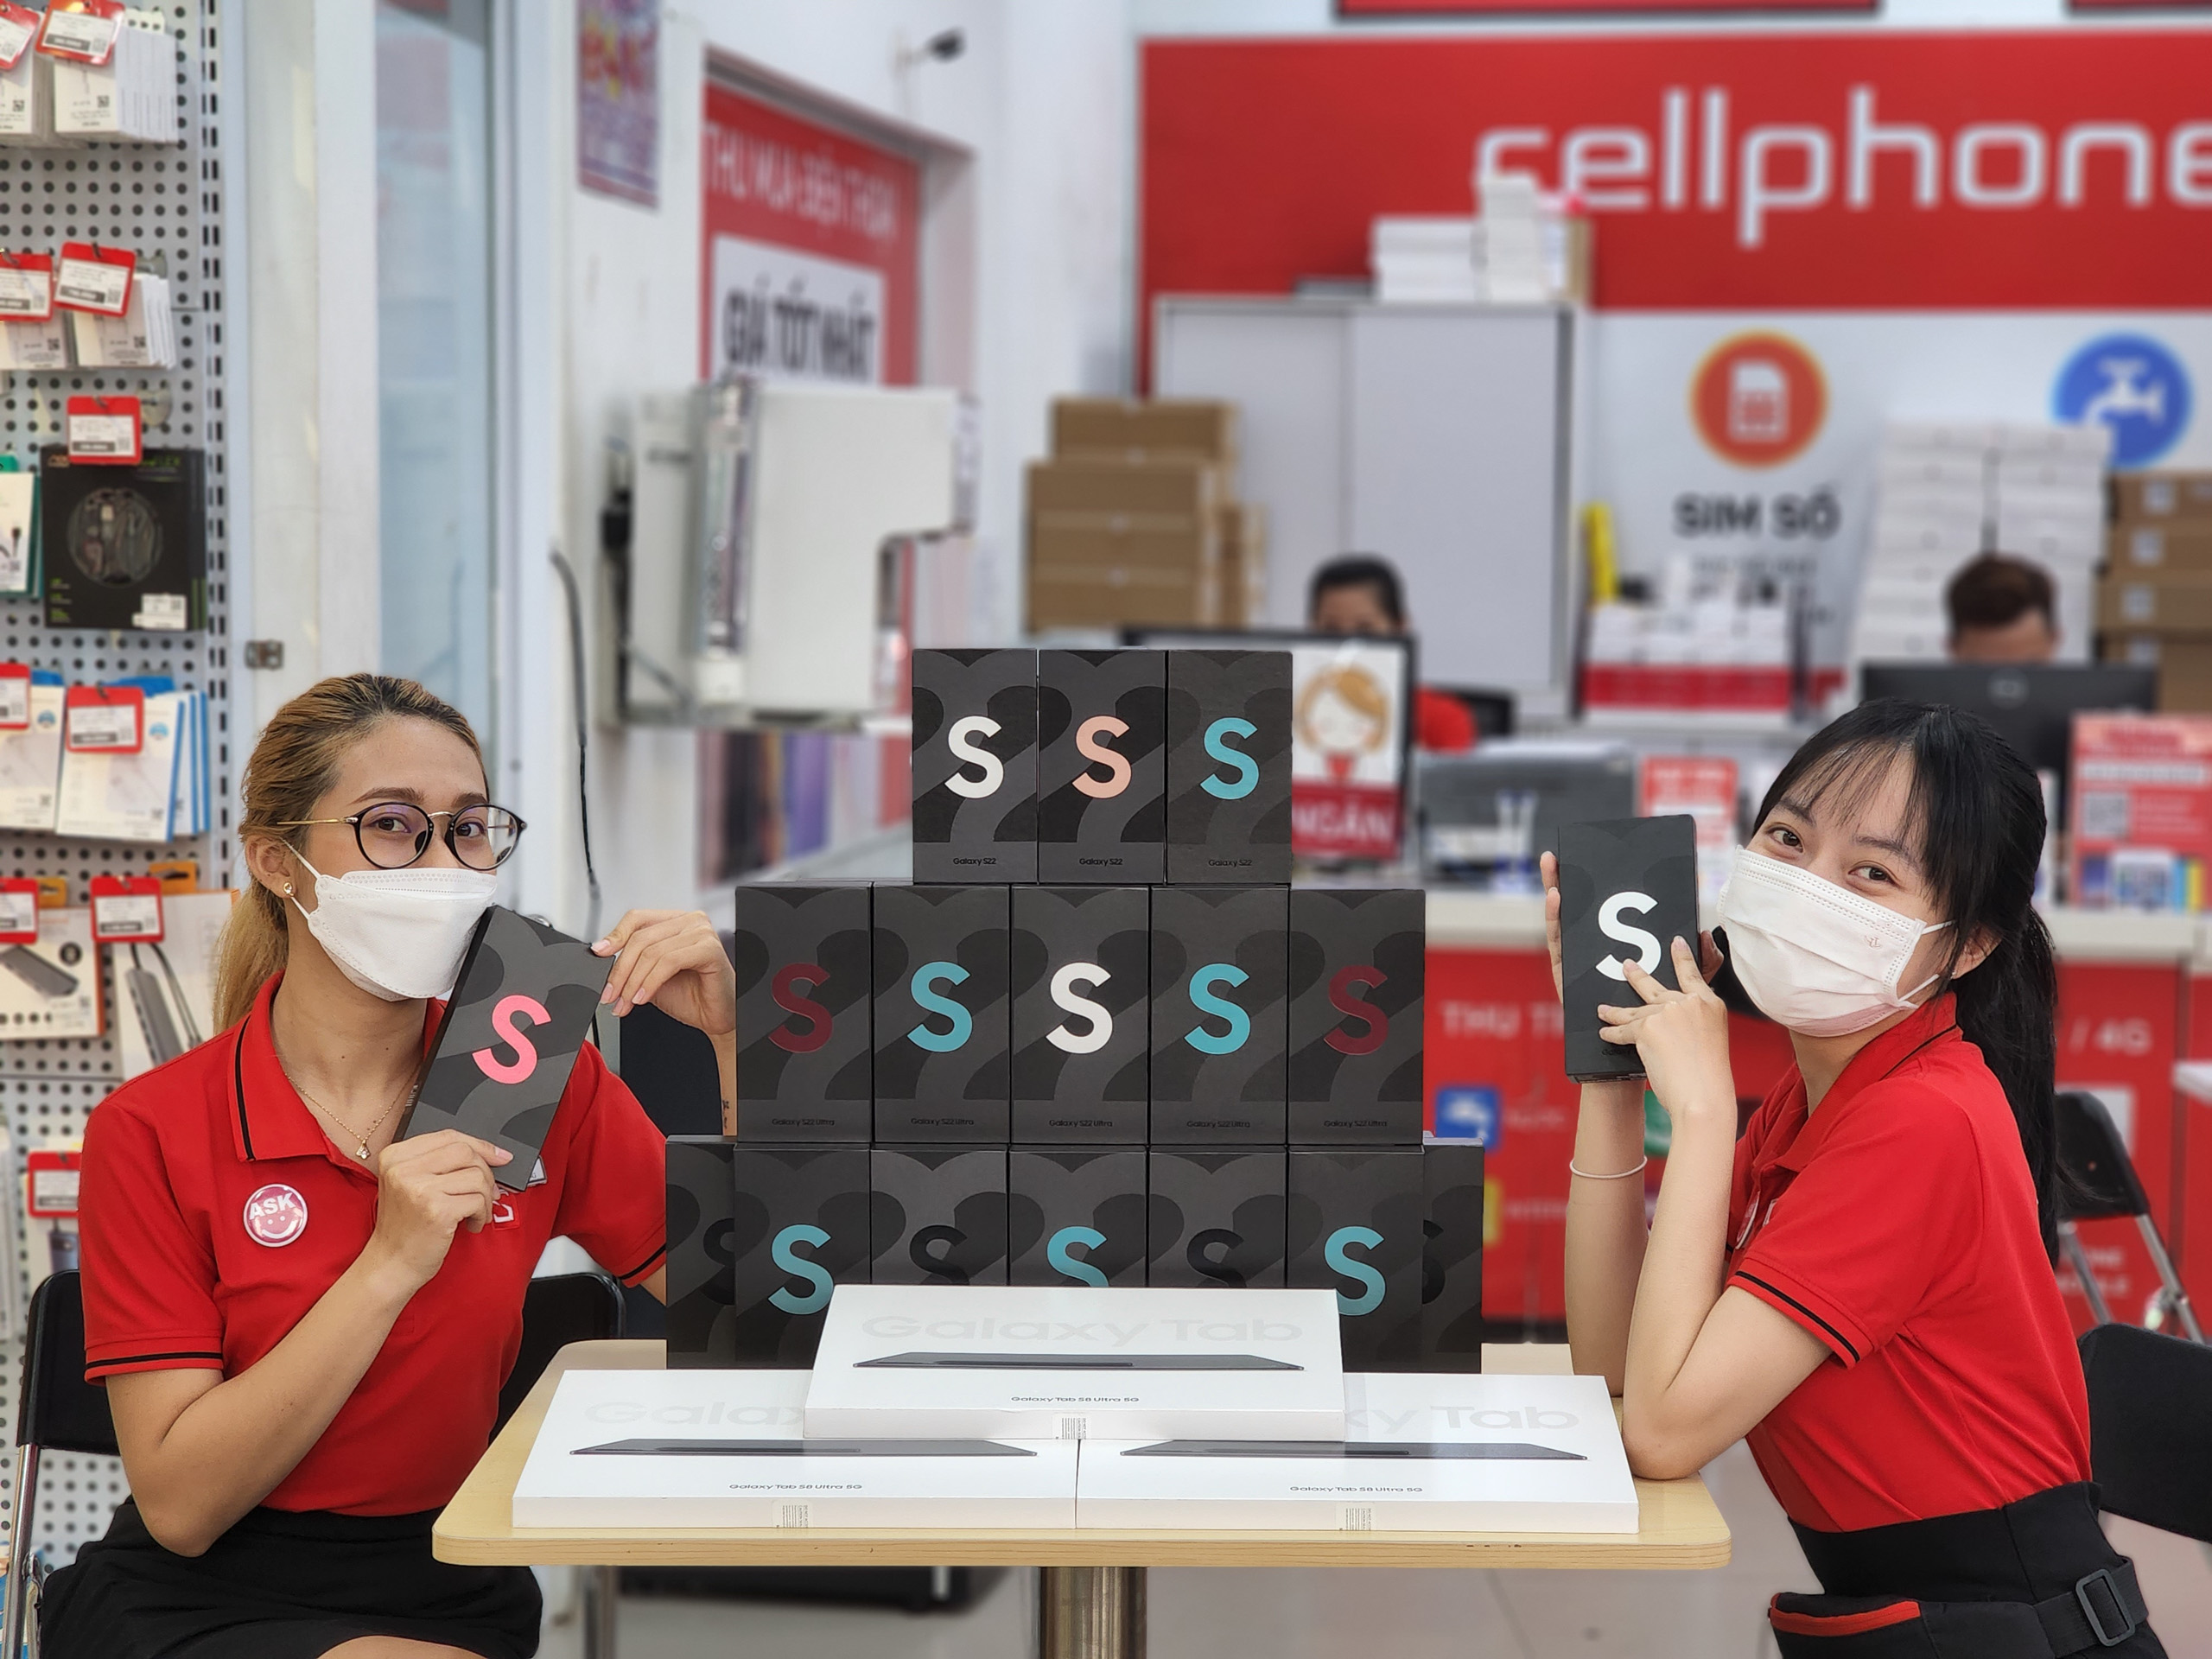 CellphoneS mở bán hơn 3000 đơn đặt mua Galaxy S22 series vào 6h sáng